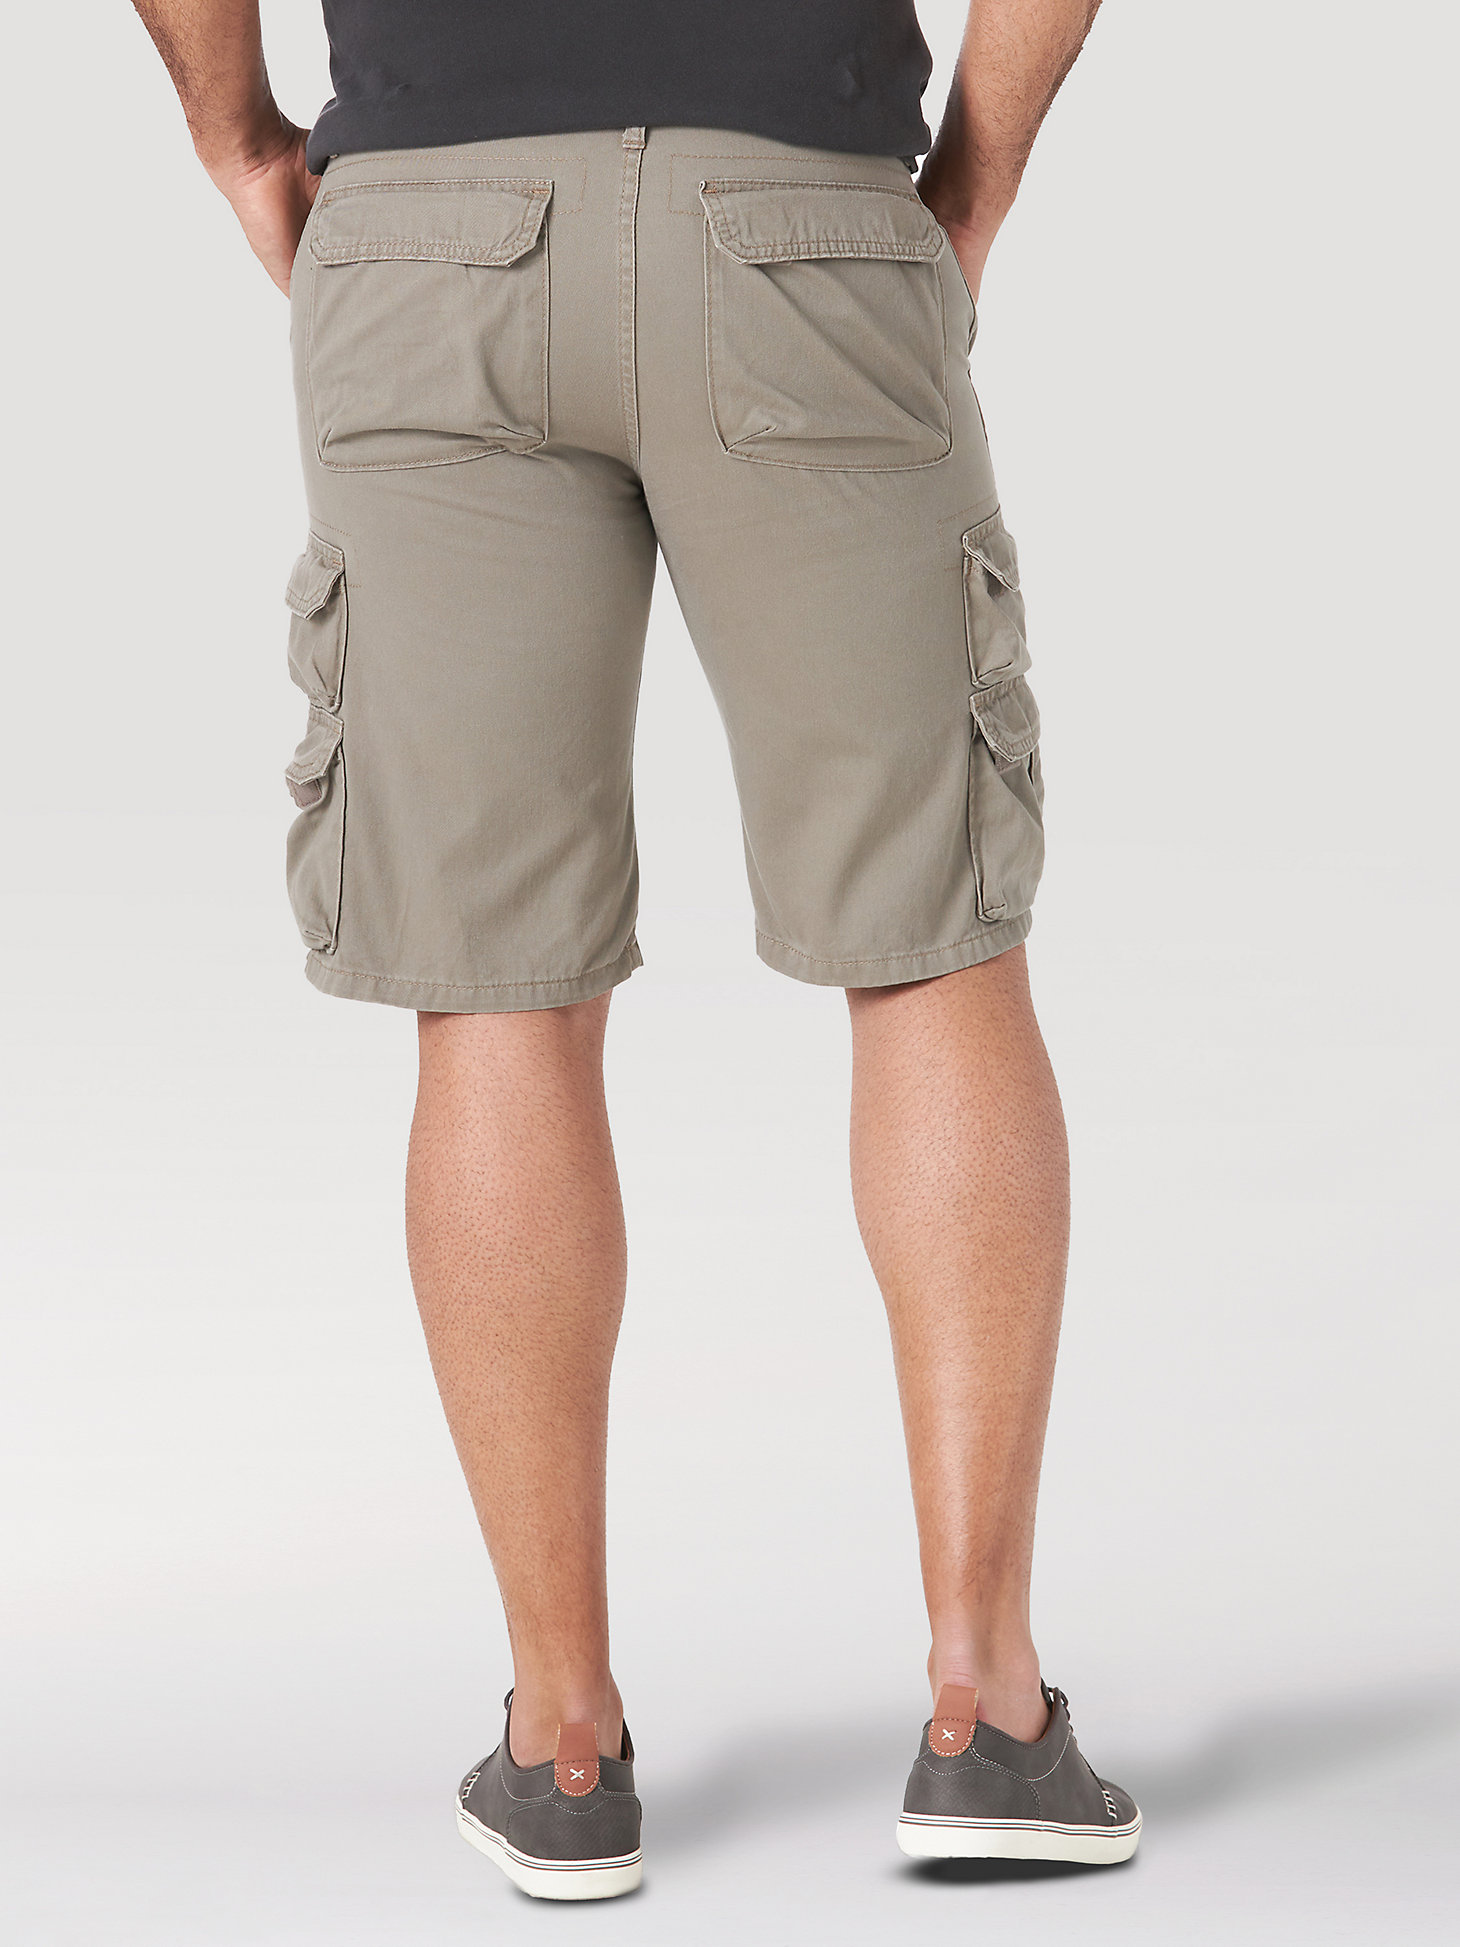 Descubrir 111+ imagen wrangler originals cargo shorts